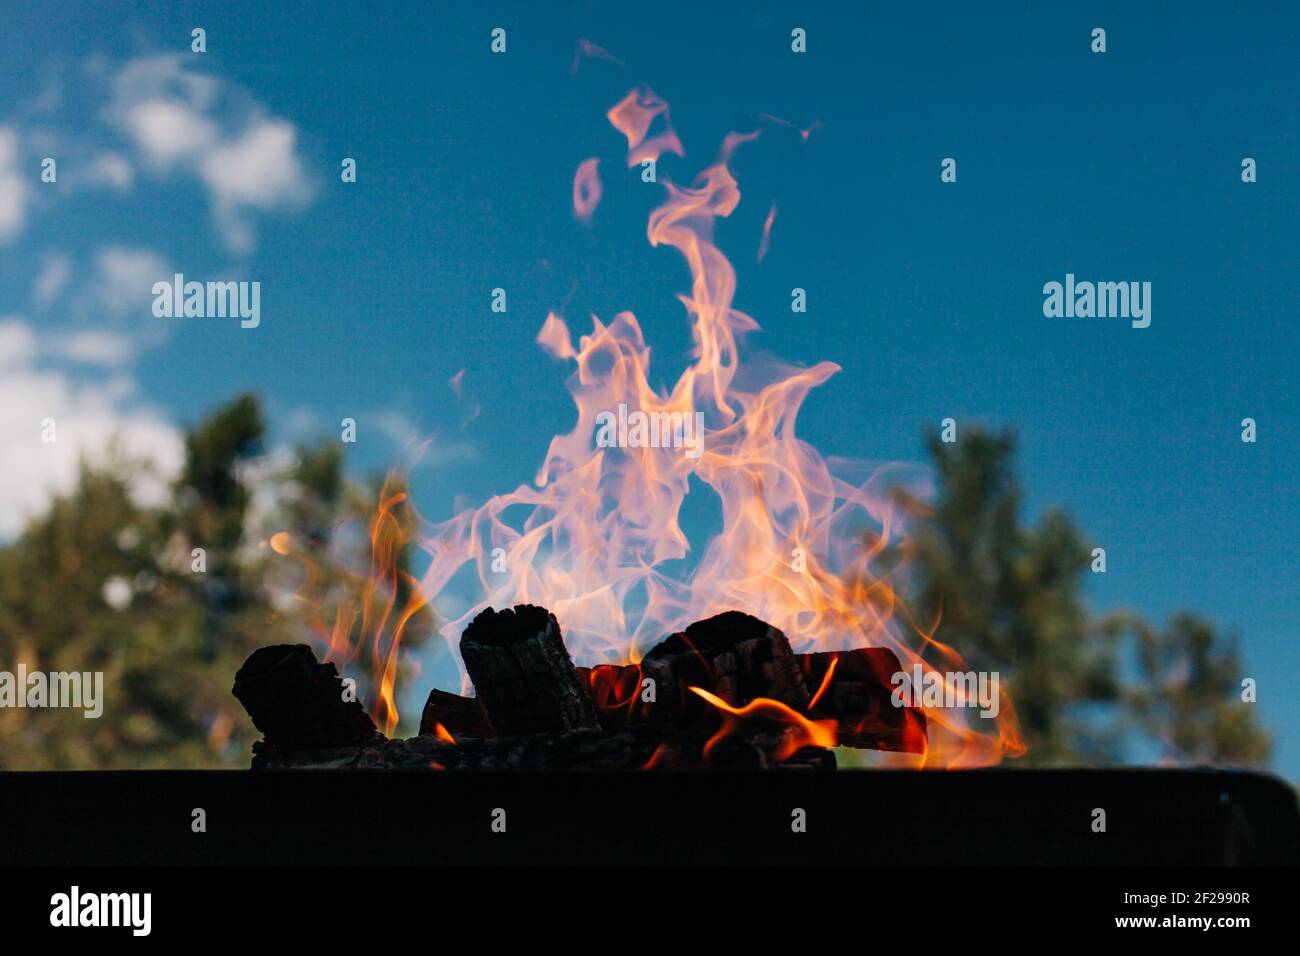 Bonfire outside, orange flames on blue skye Stock Photo